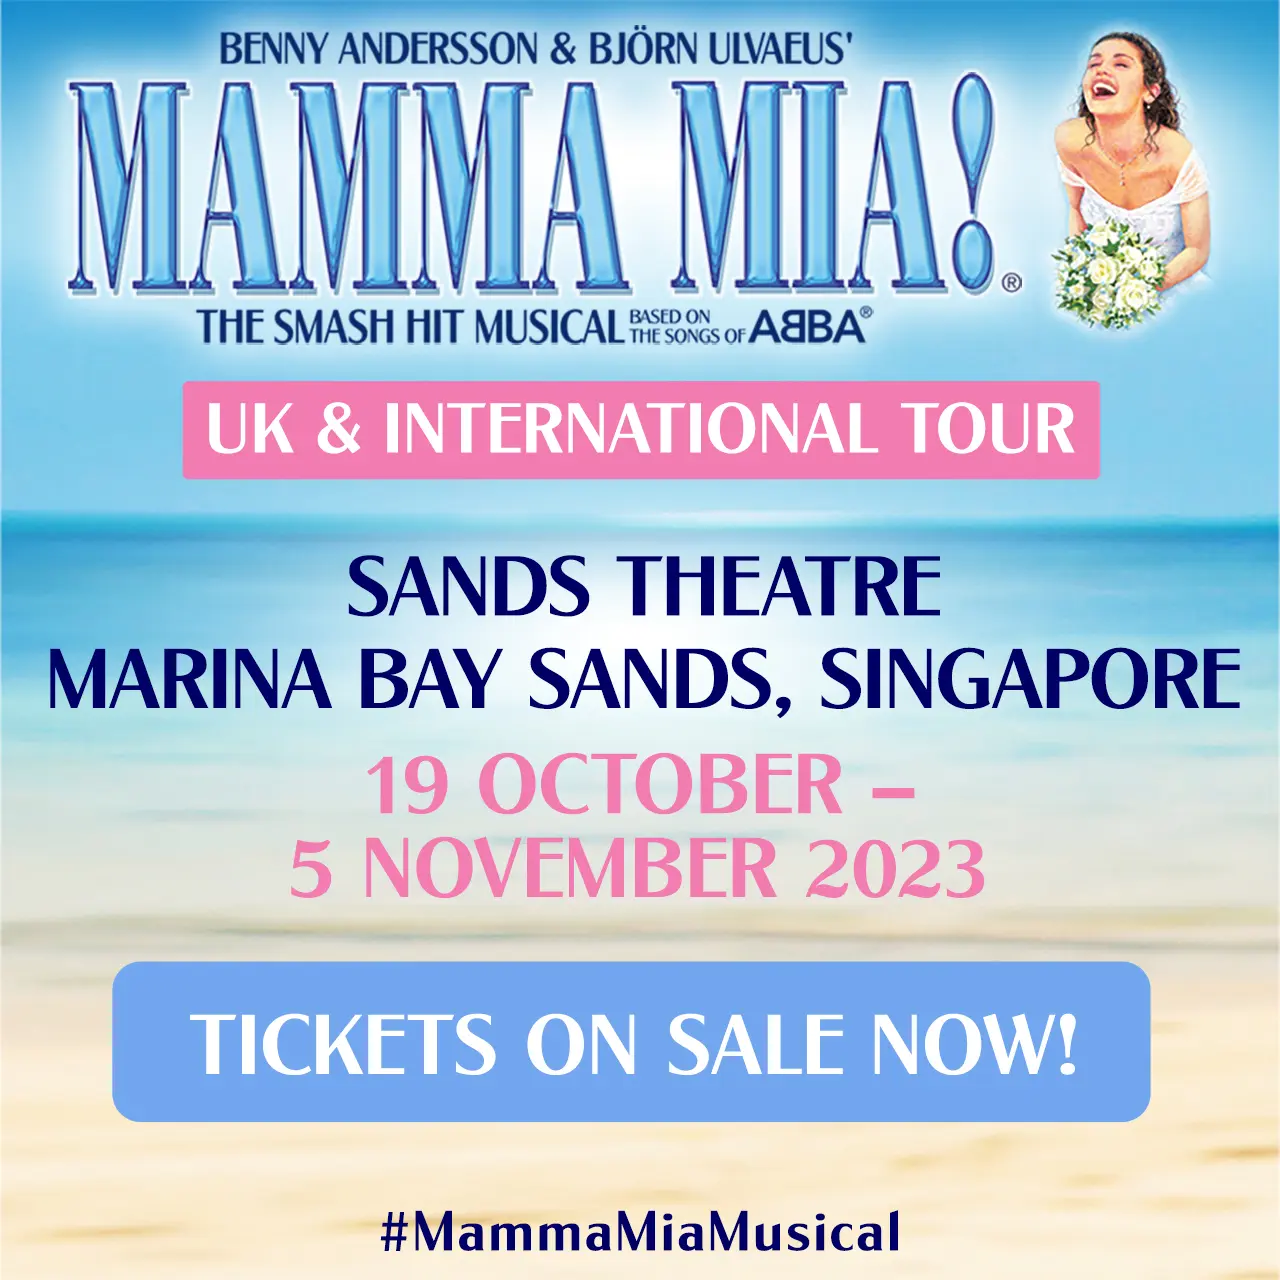 The MAMMA MIA! International Tour in Singapore